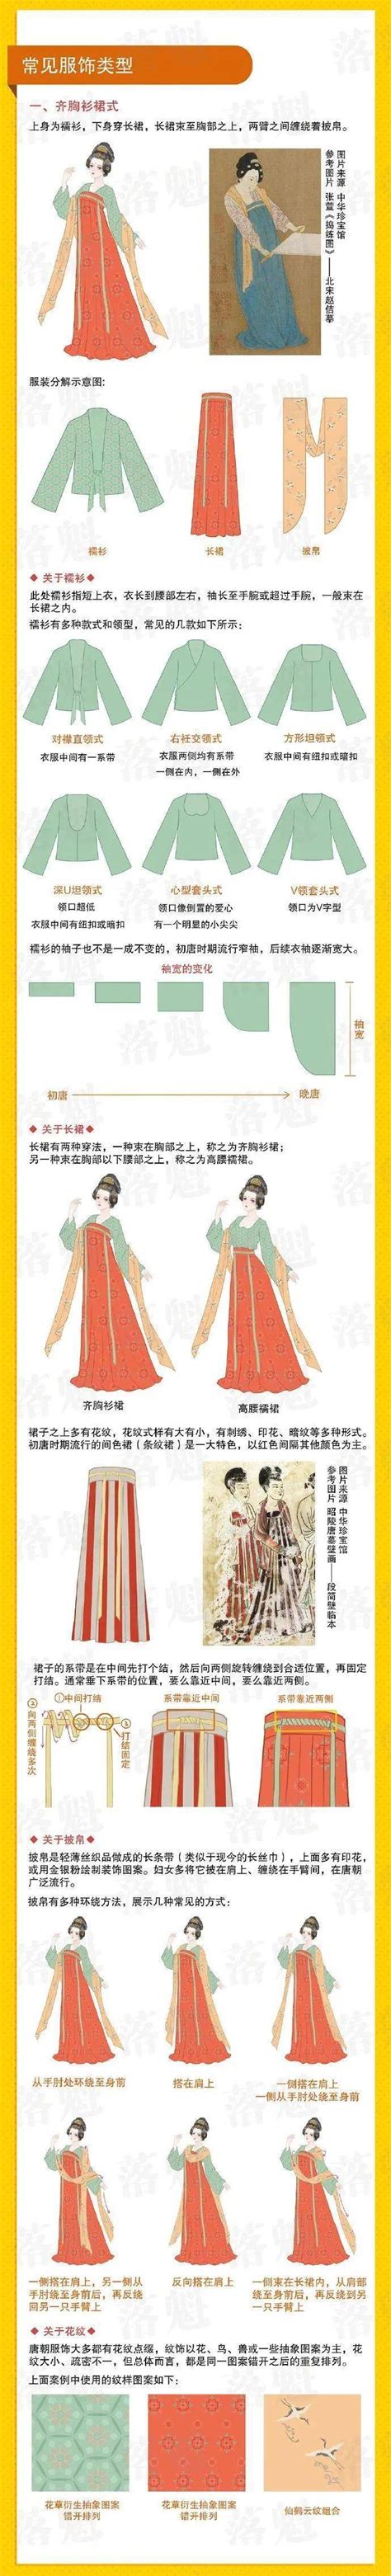 唐朝人的审美有多绝？看看复原款汉服就知道了，端庄又大气 - 传统文化生活网